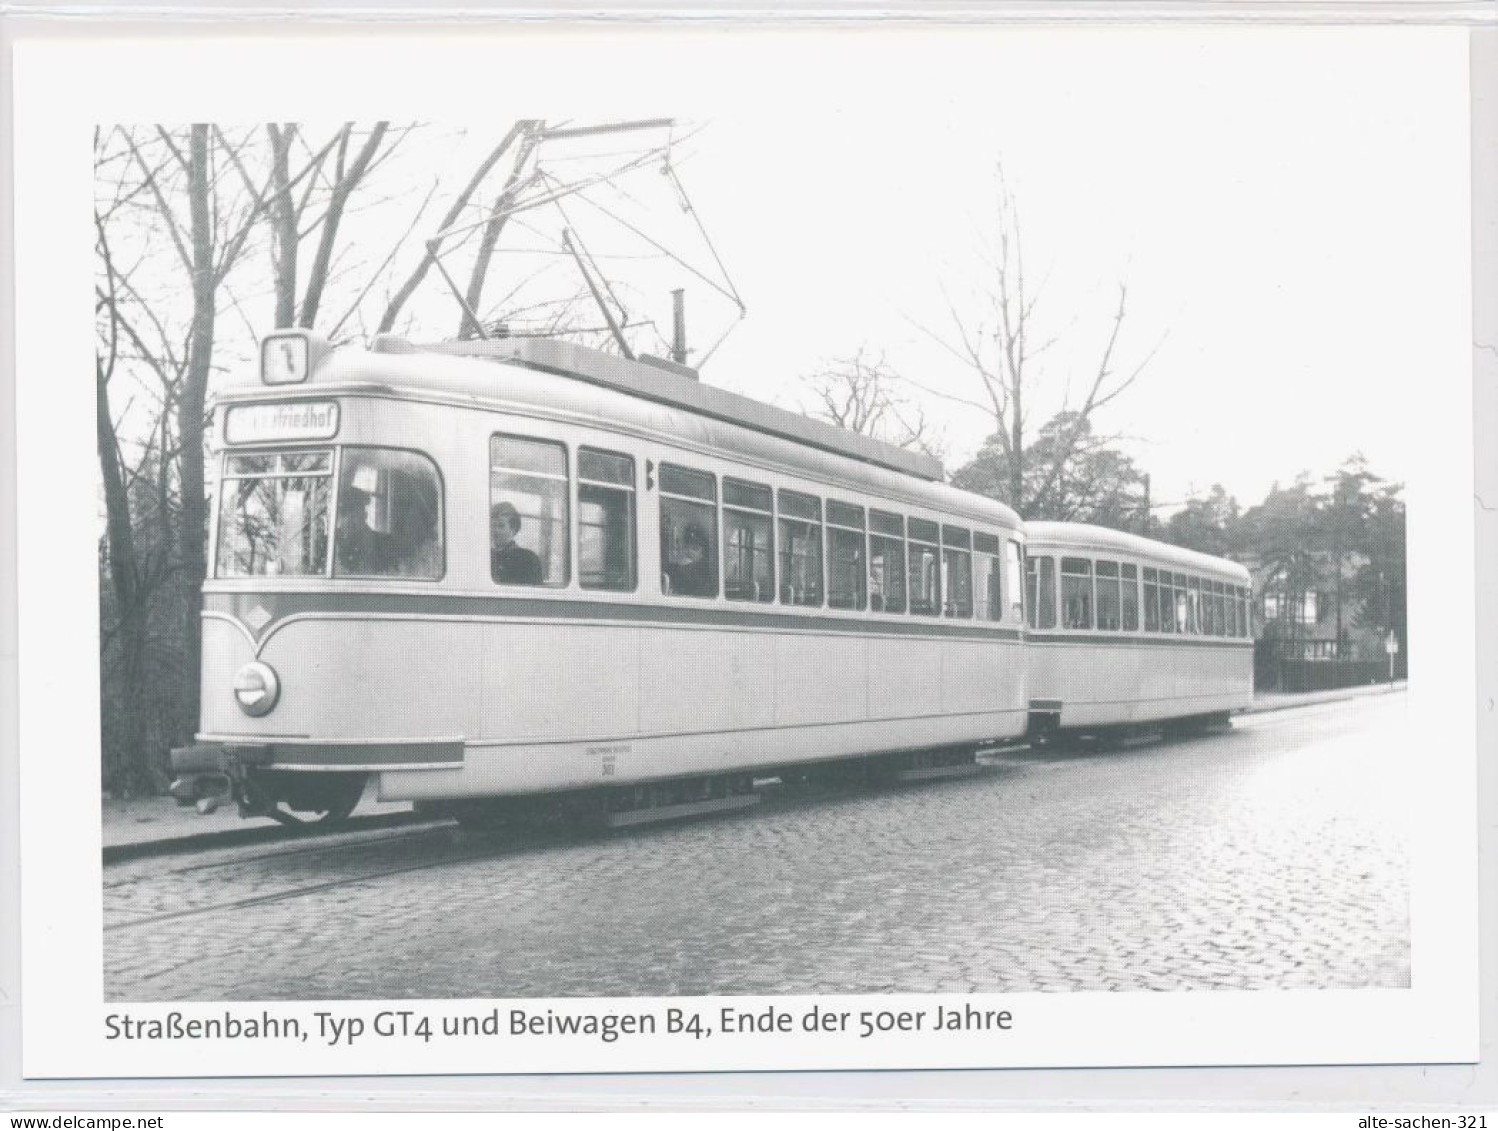 10 AK Straßenbahn Stadtbahn Bielefeld 1915 - 1990 Repro-Serie von 2006 (15 Jahre Stadtbahn)